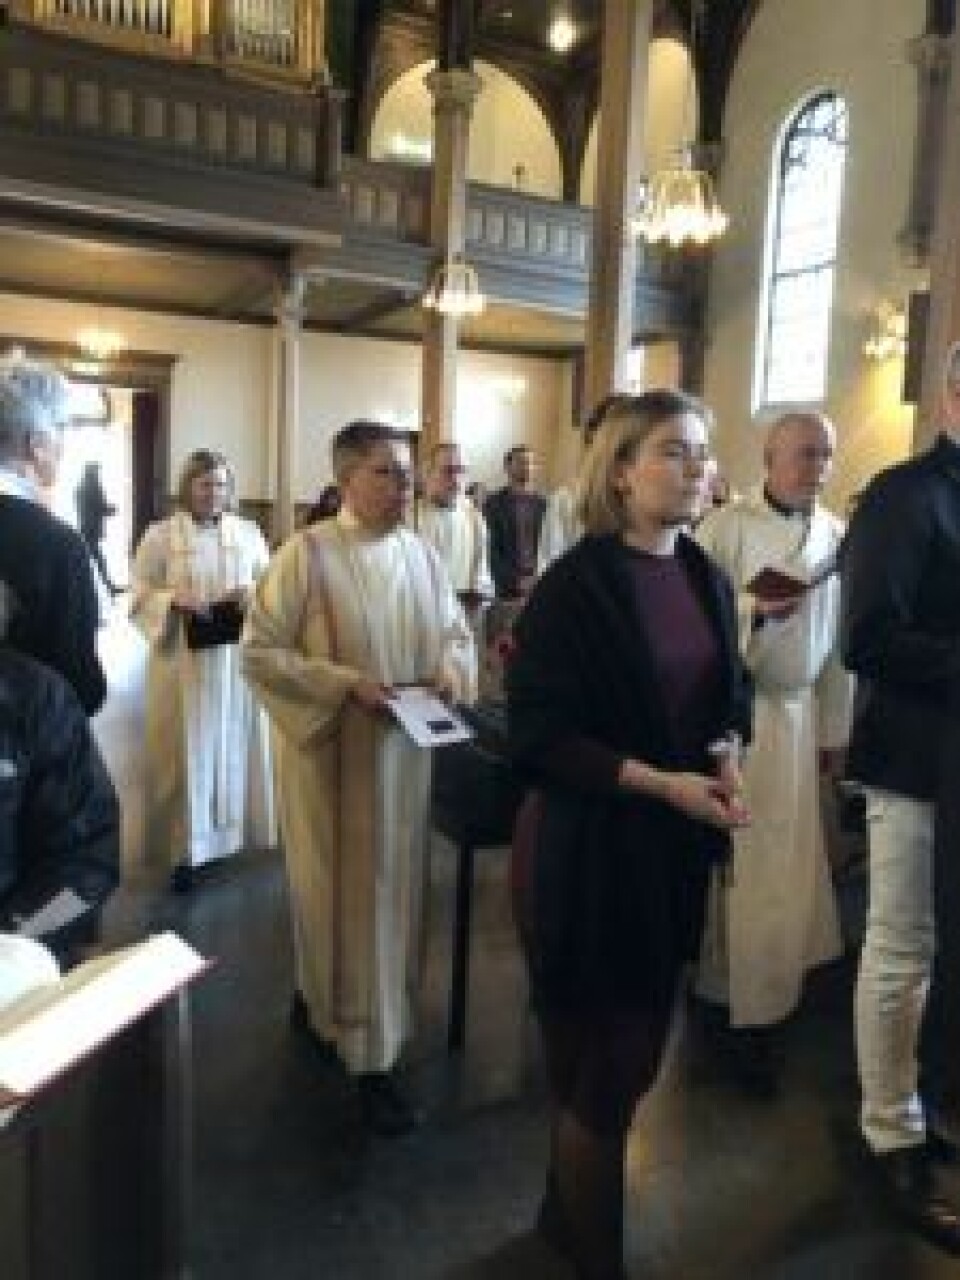 Prestene gikk i kø på den siste dagen i Sofienberg kirke. Foto: Kjersti Opstad